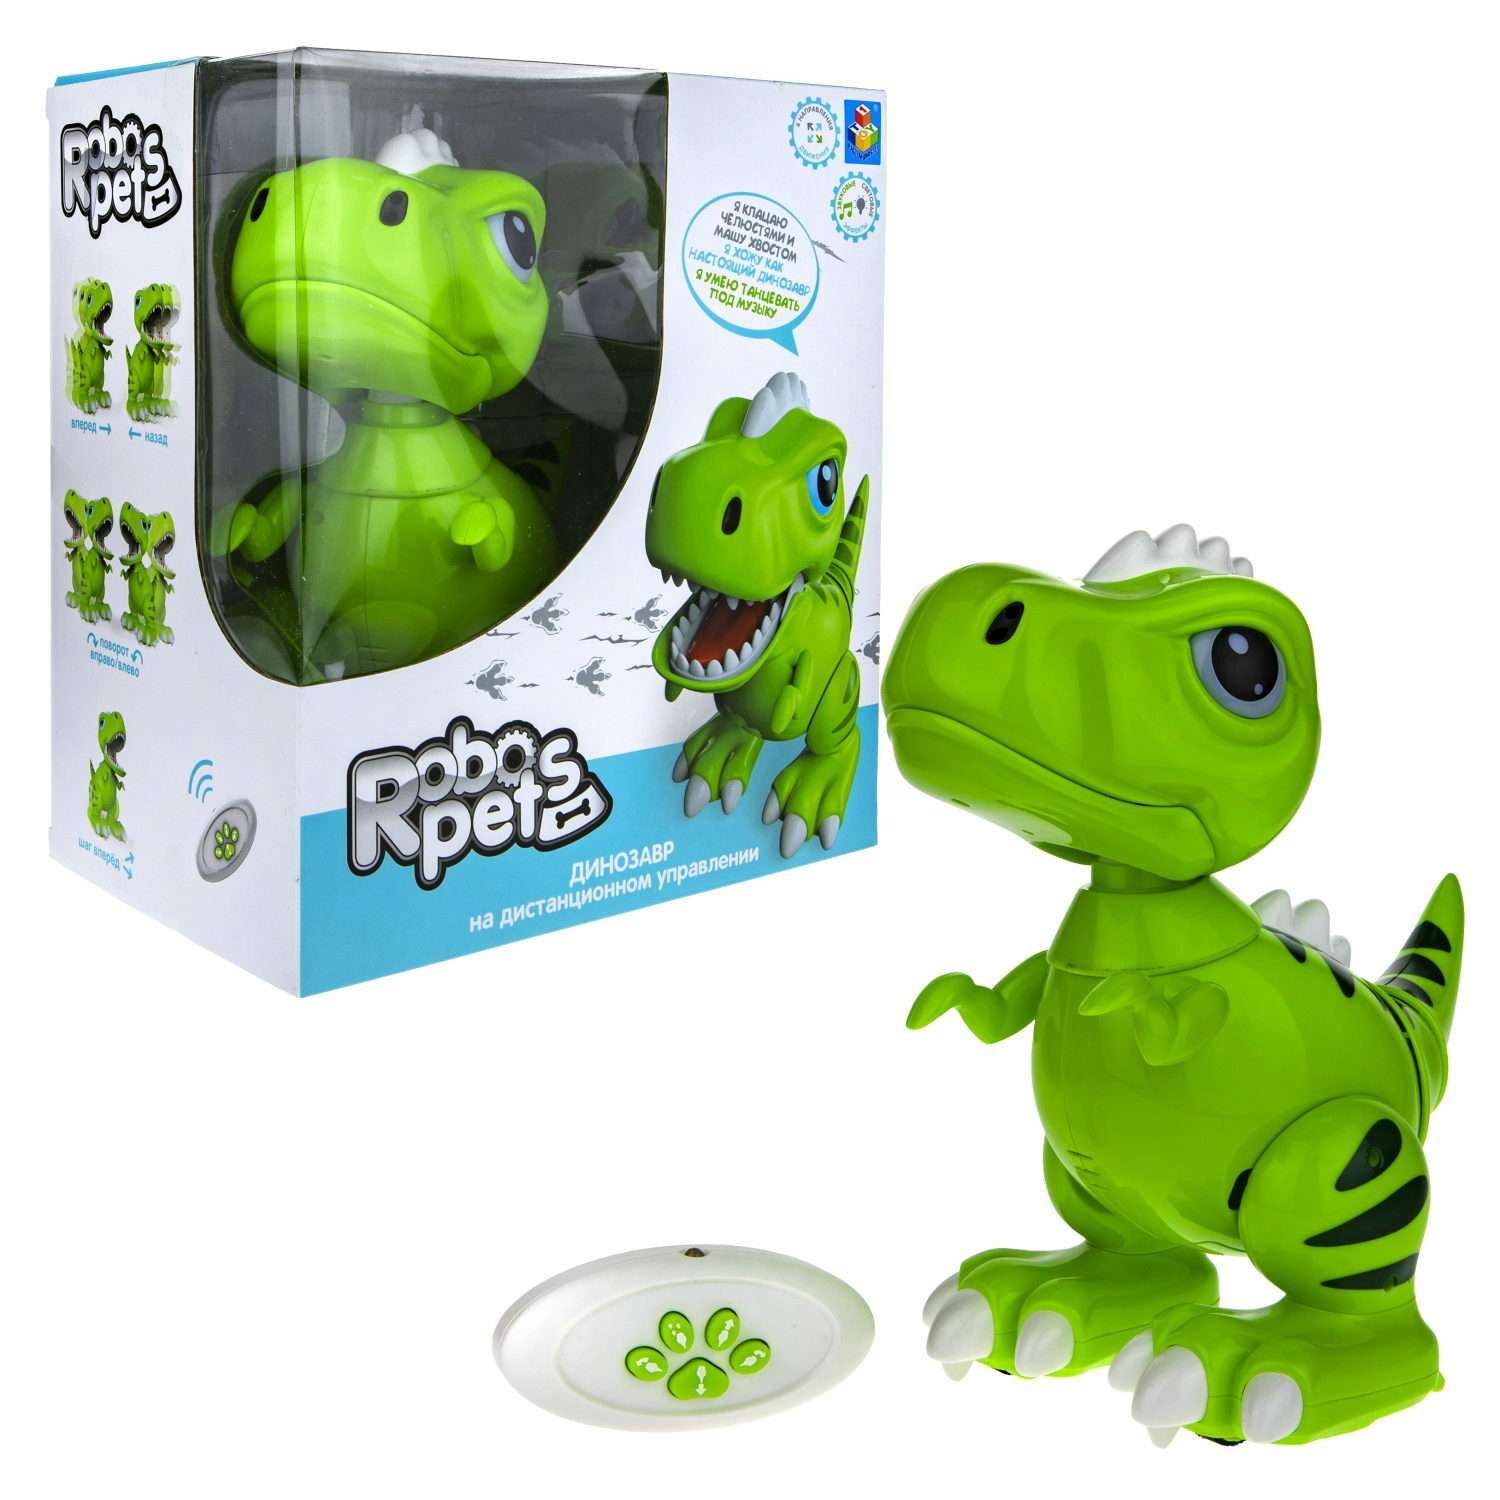 Интерактивная игрушка Robo Pets Динозавр Т-РЕКС зеленый на РУ со световыми звуковыми и эффектами движения - фото 2